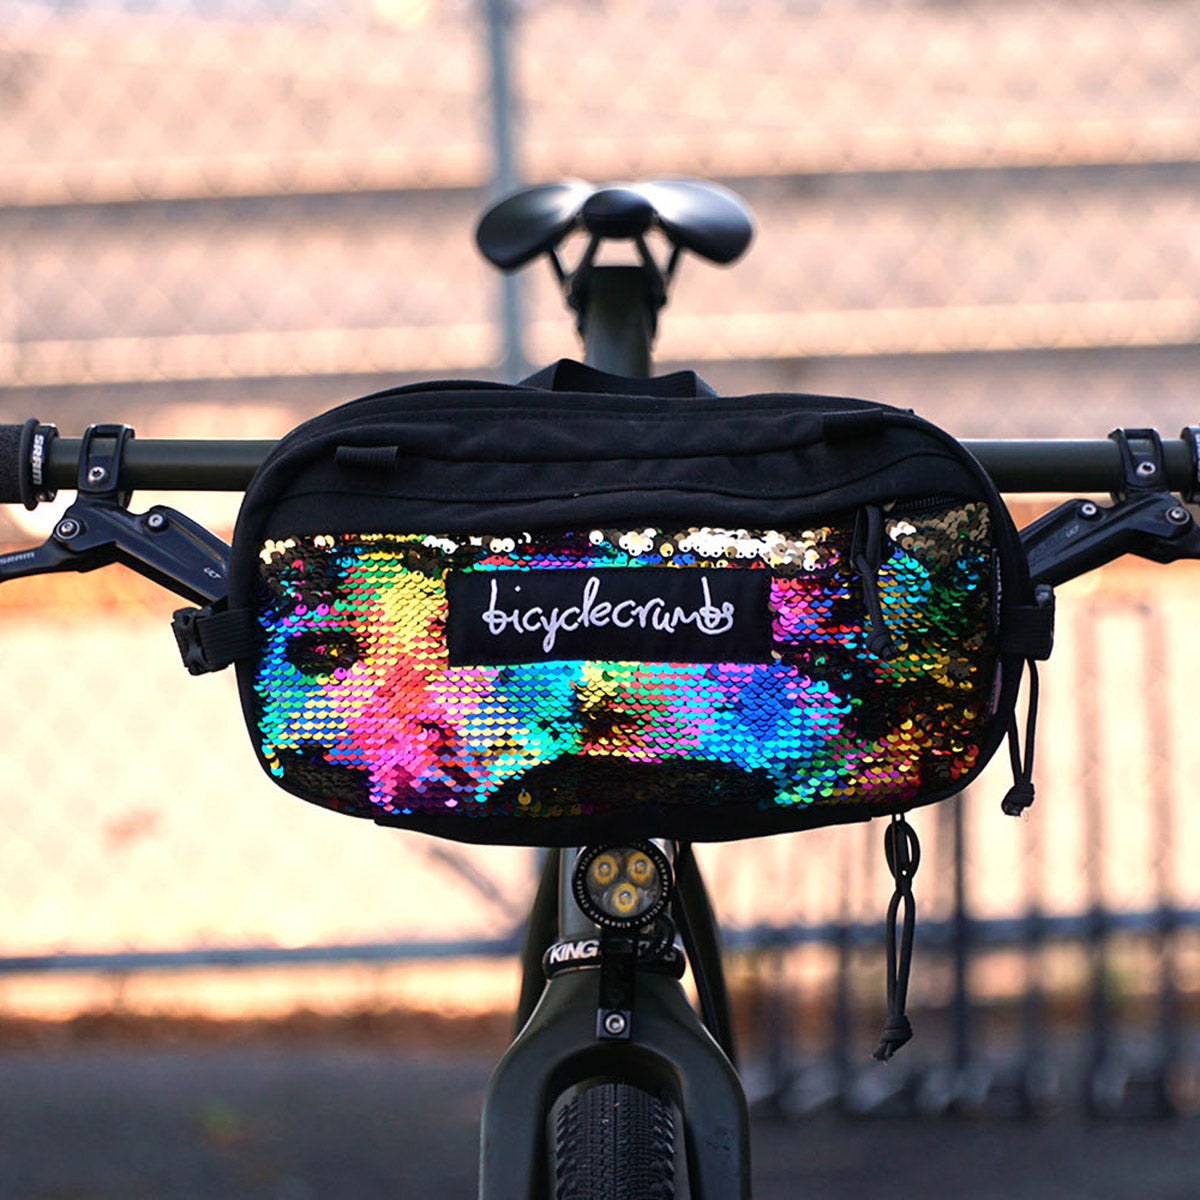 North St. Bags X bicyclecrumbs pioneer 12 bike bag